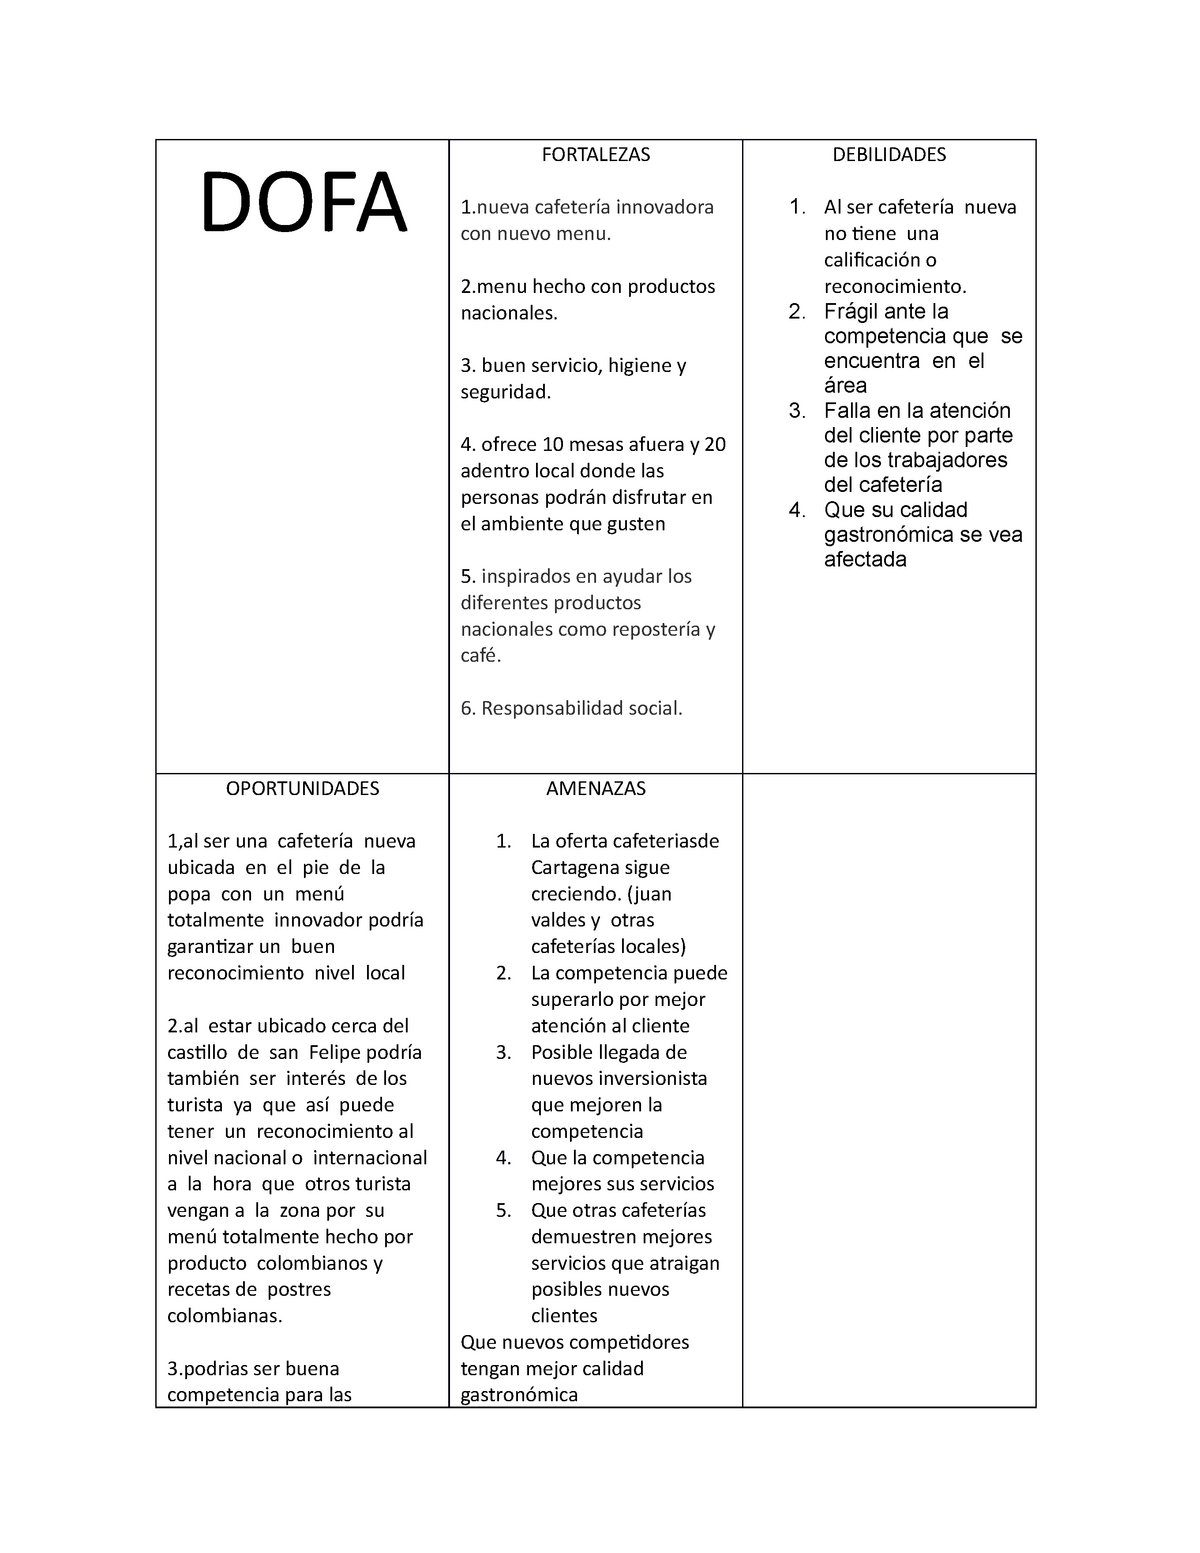 Analisis DOFA Royal coffe - DOFA FORTALEZAS 1 cafetería innovadora con  nuevo menu. 2 hecho con - Studocu